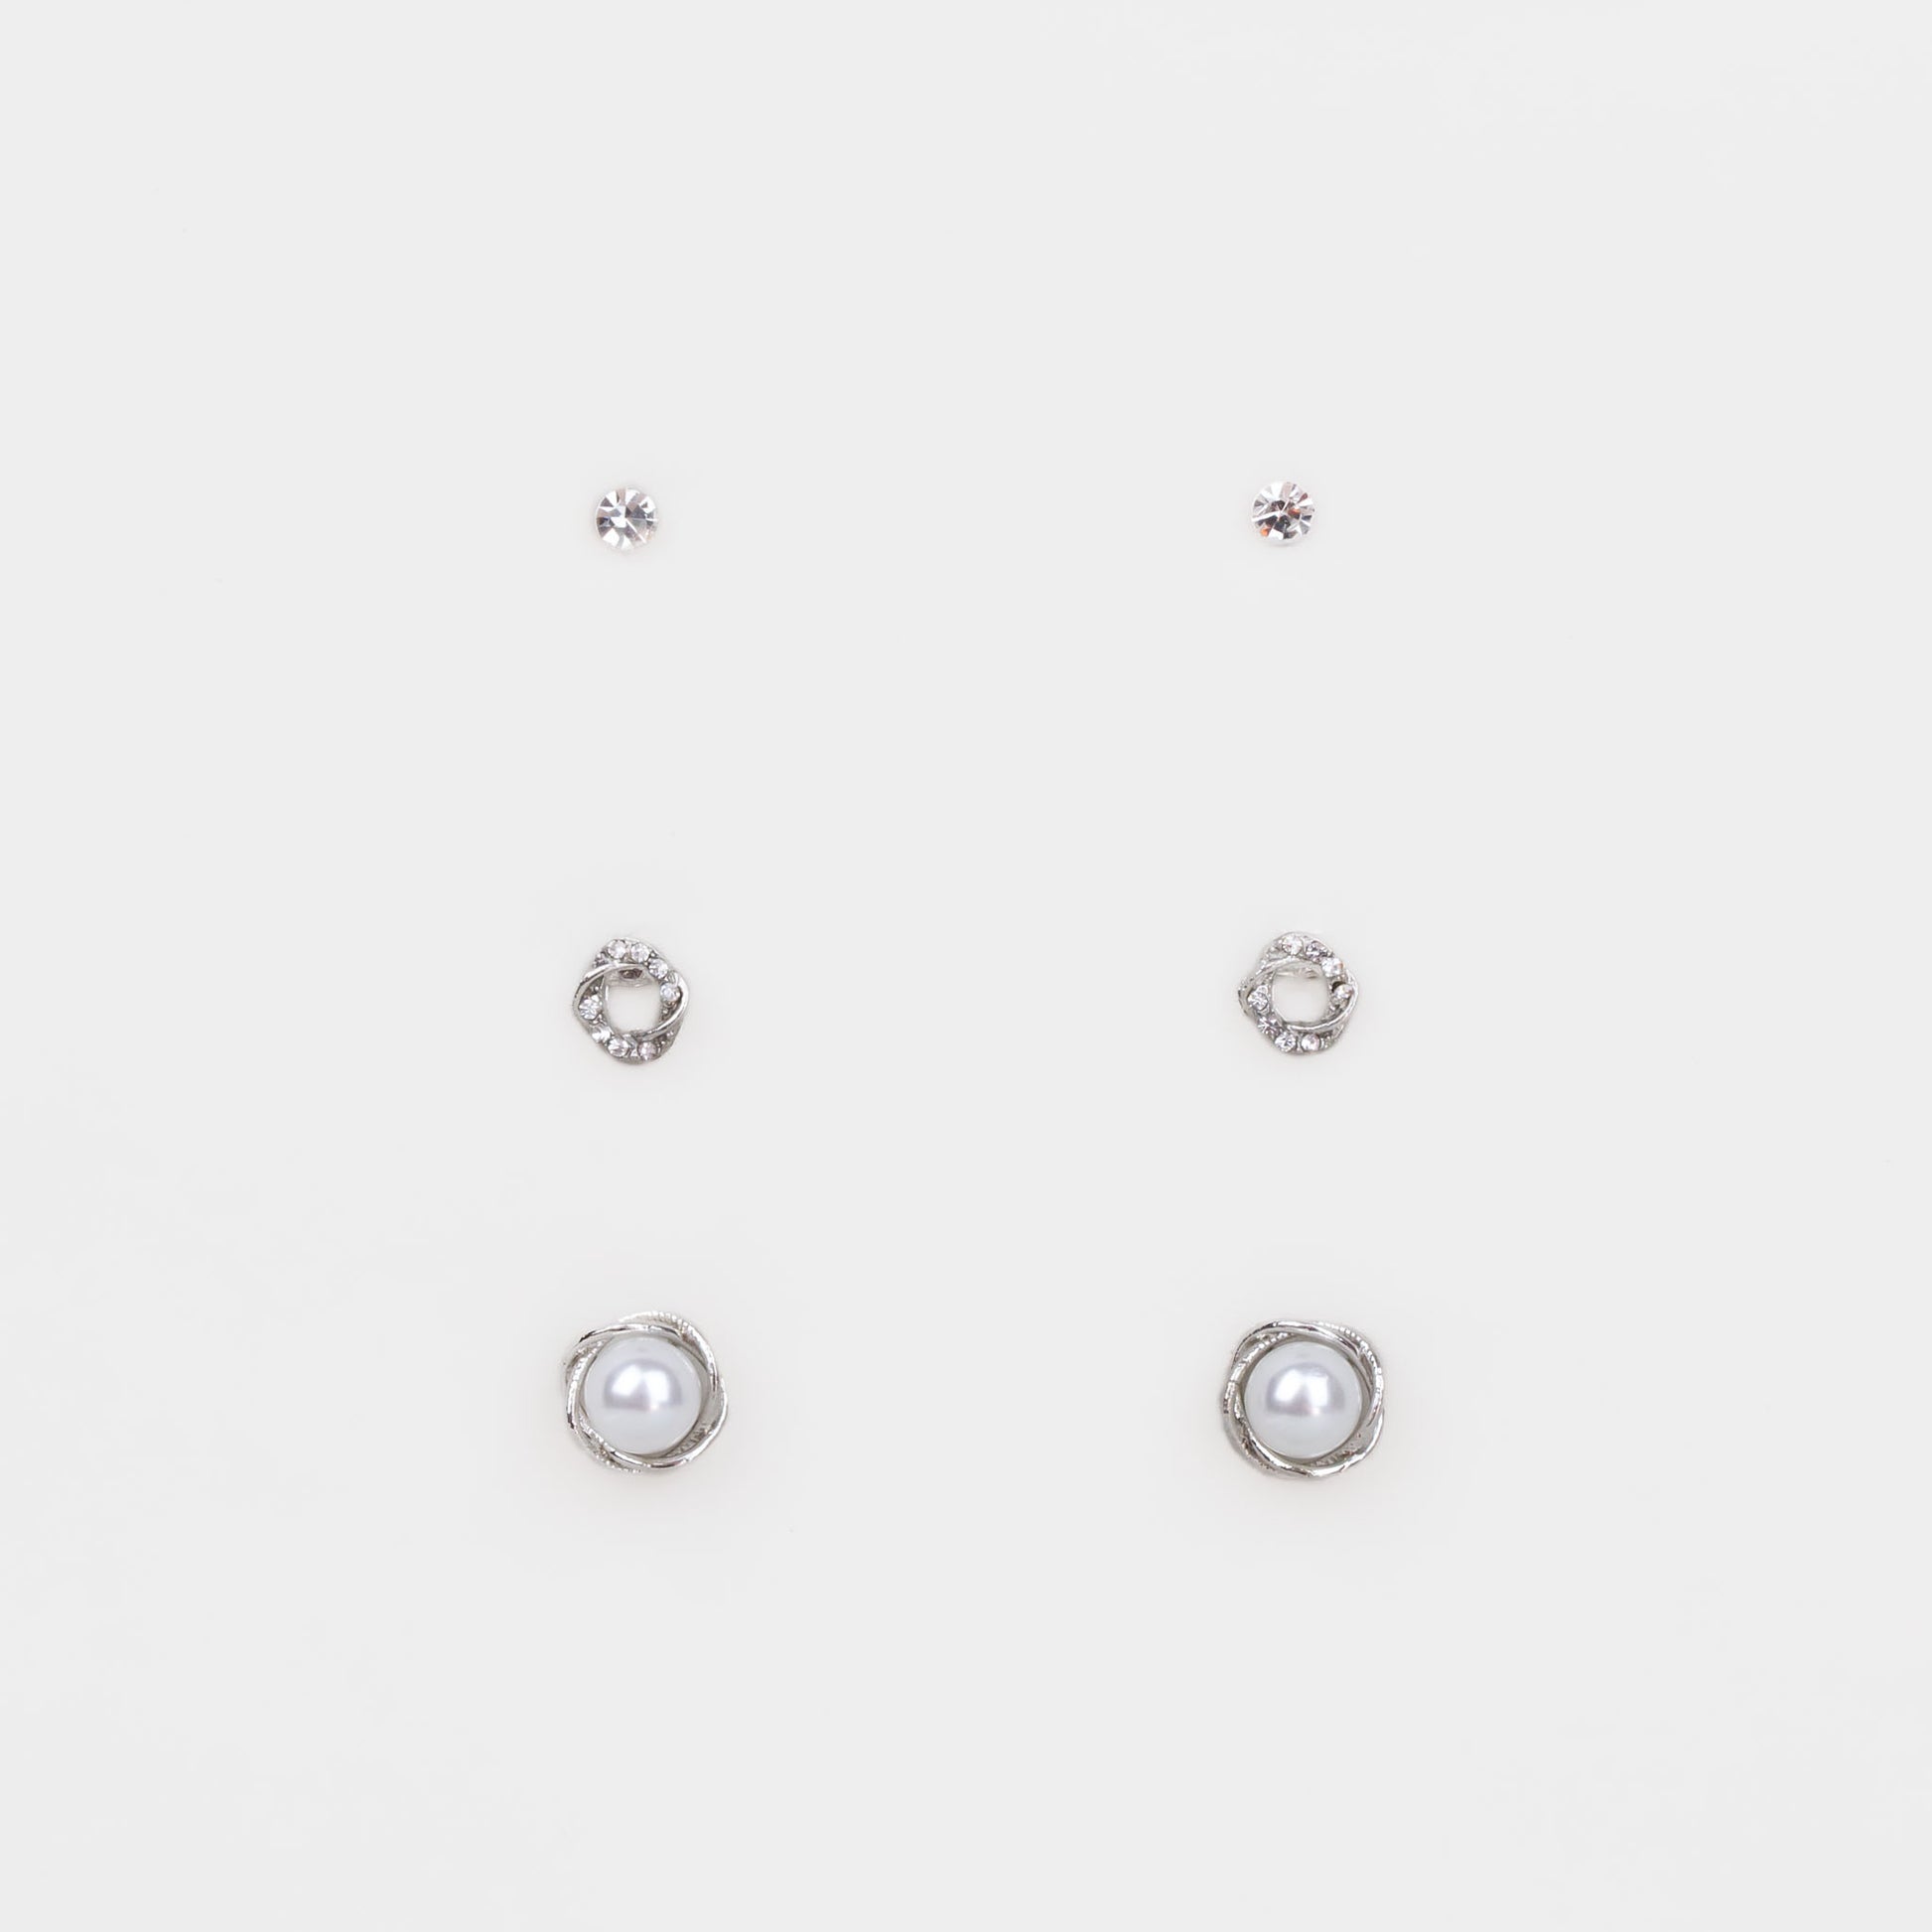 Cercei mici cu forme împletite, perlă și ștrasuri, set 3 perechi - Argintiu